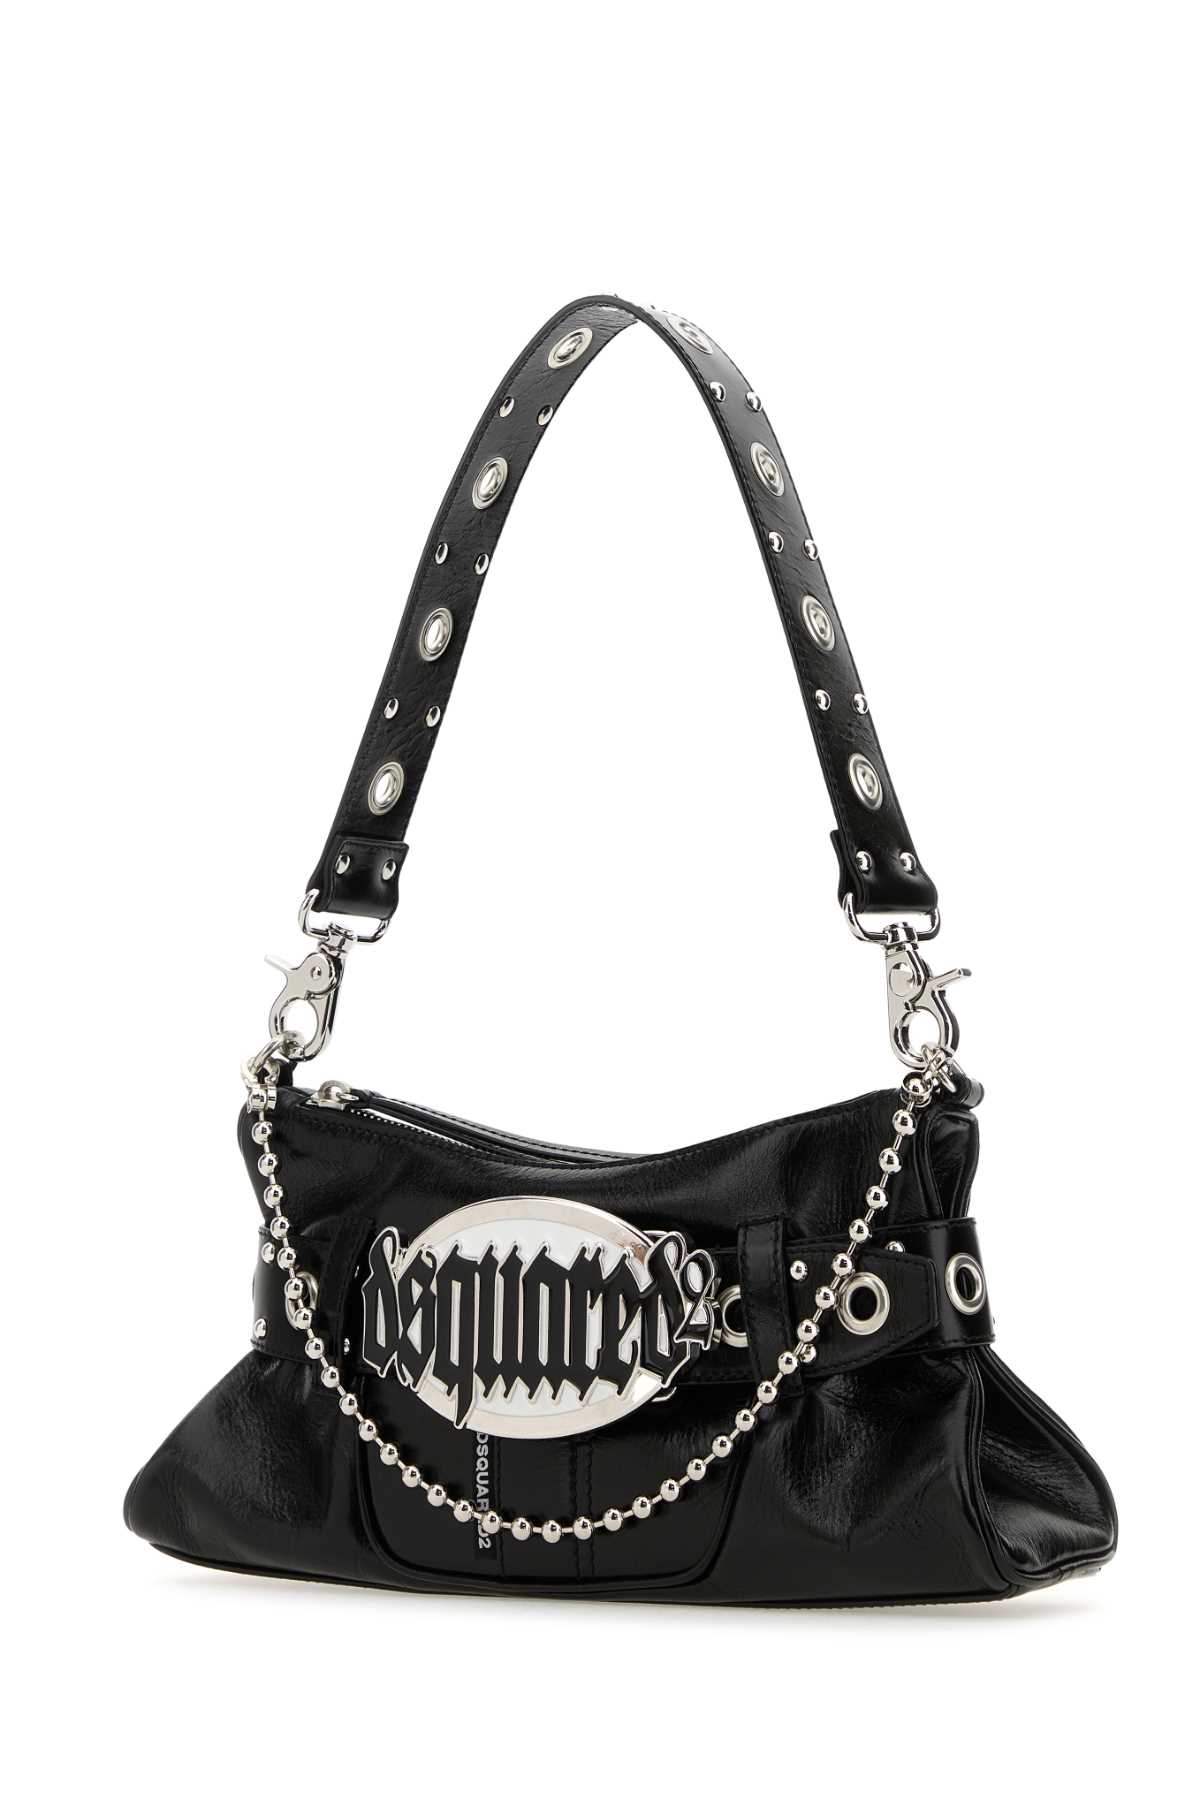 Dsquared2 Black Leather Gothic Shoulder Bag